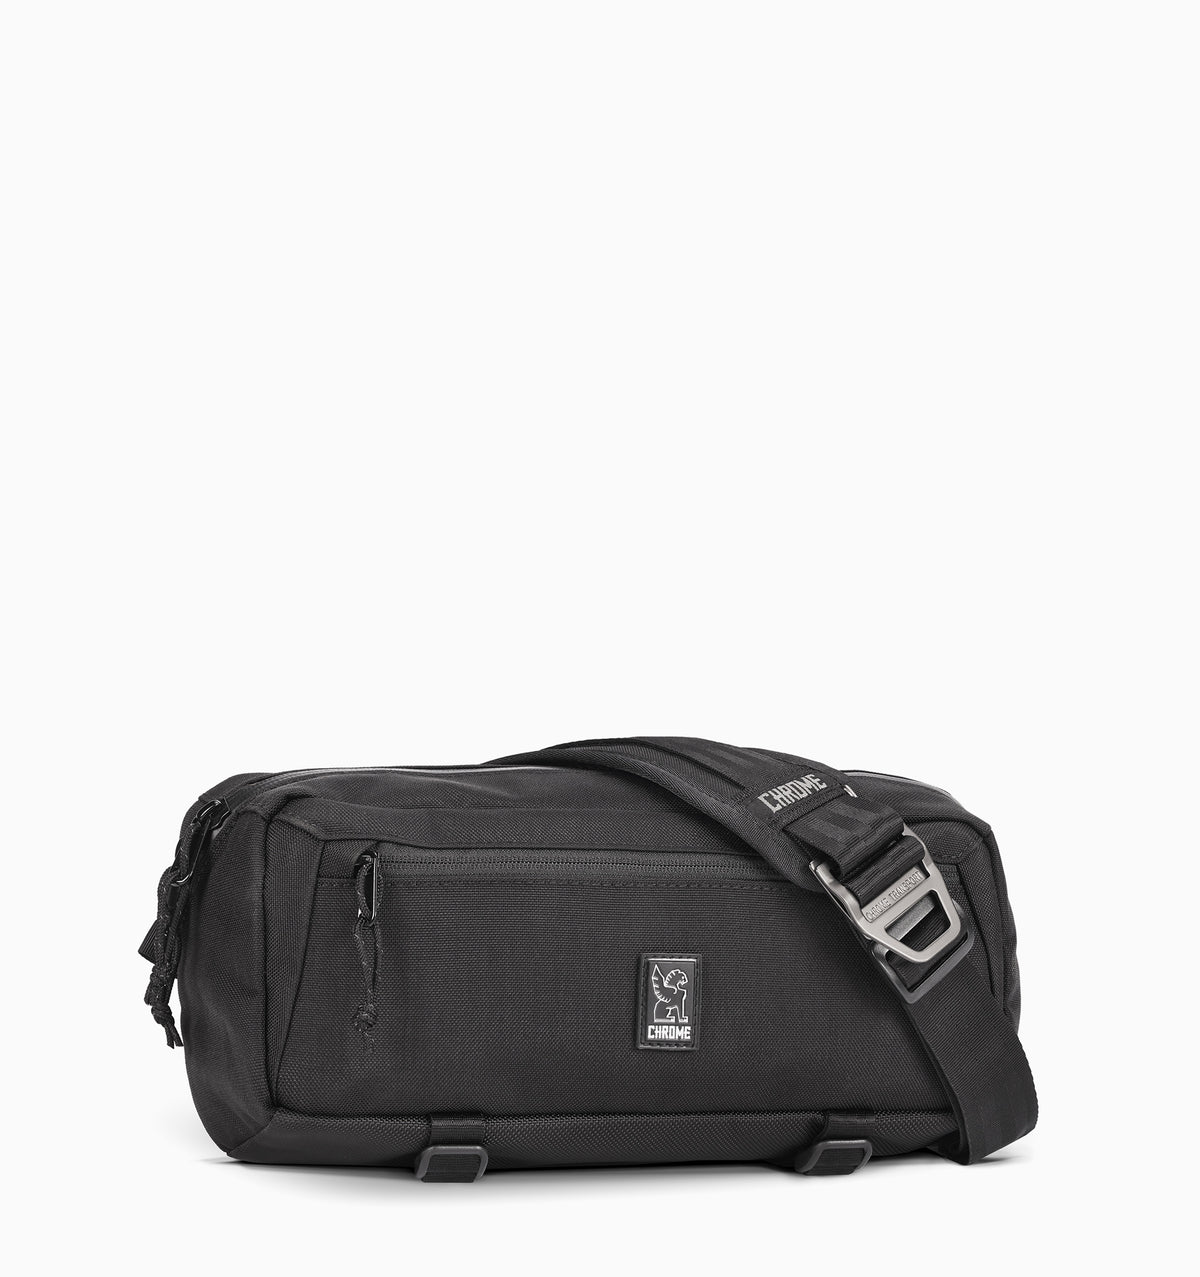 Chrome Mini Kadet Sling Messenger Bag 5L - Black